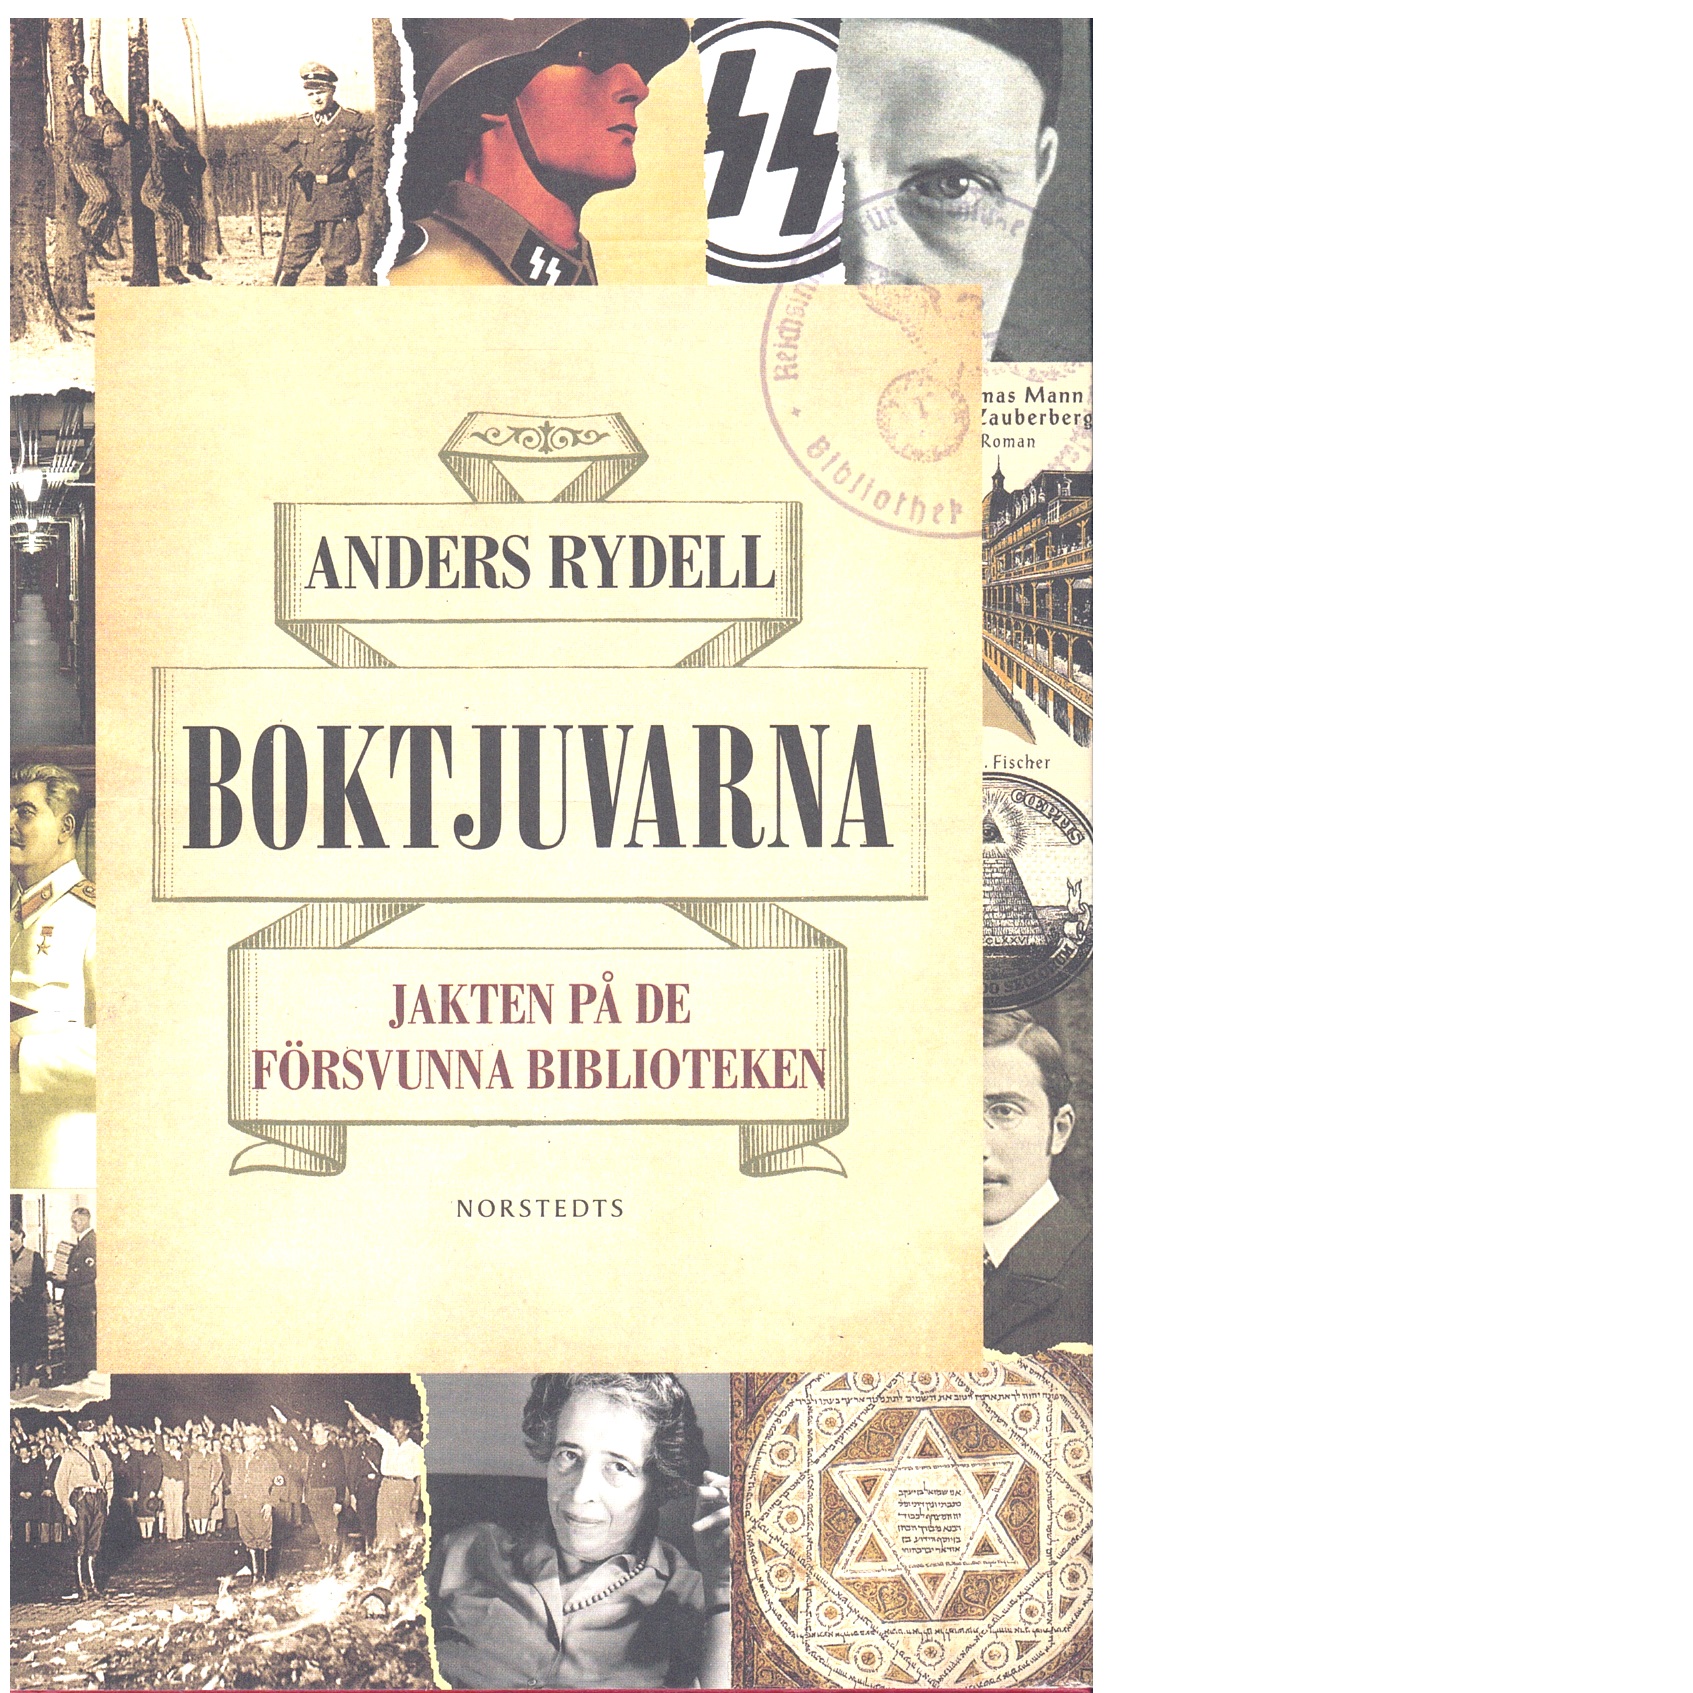 Boktjuvarna : jakten på de försvunna biblioteken - Rydell, Anders